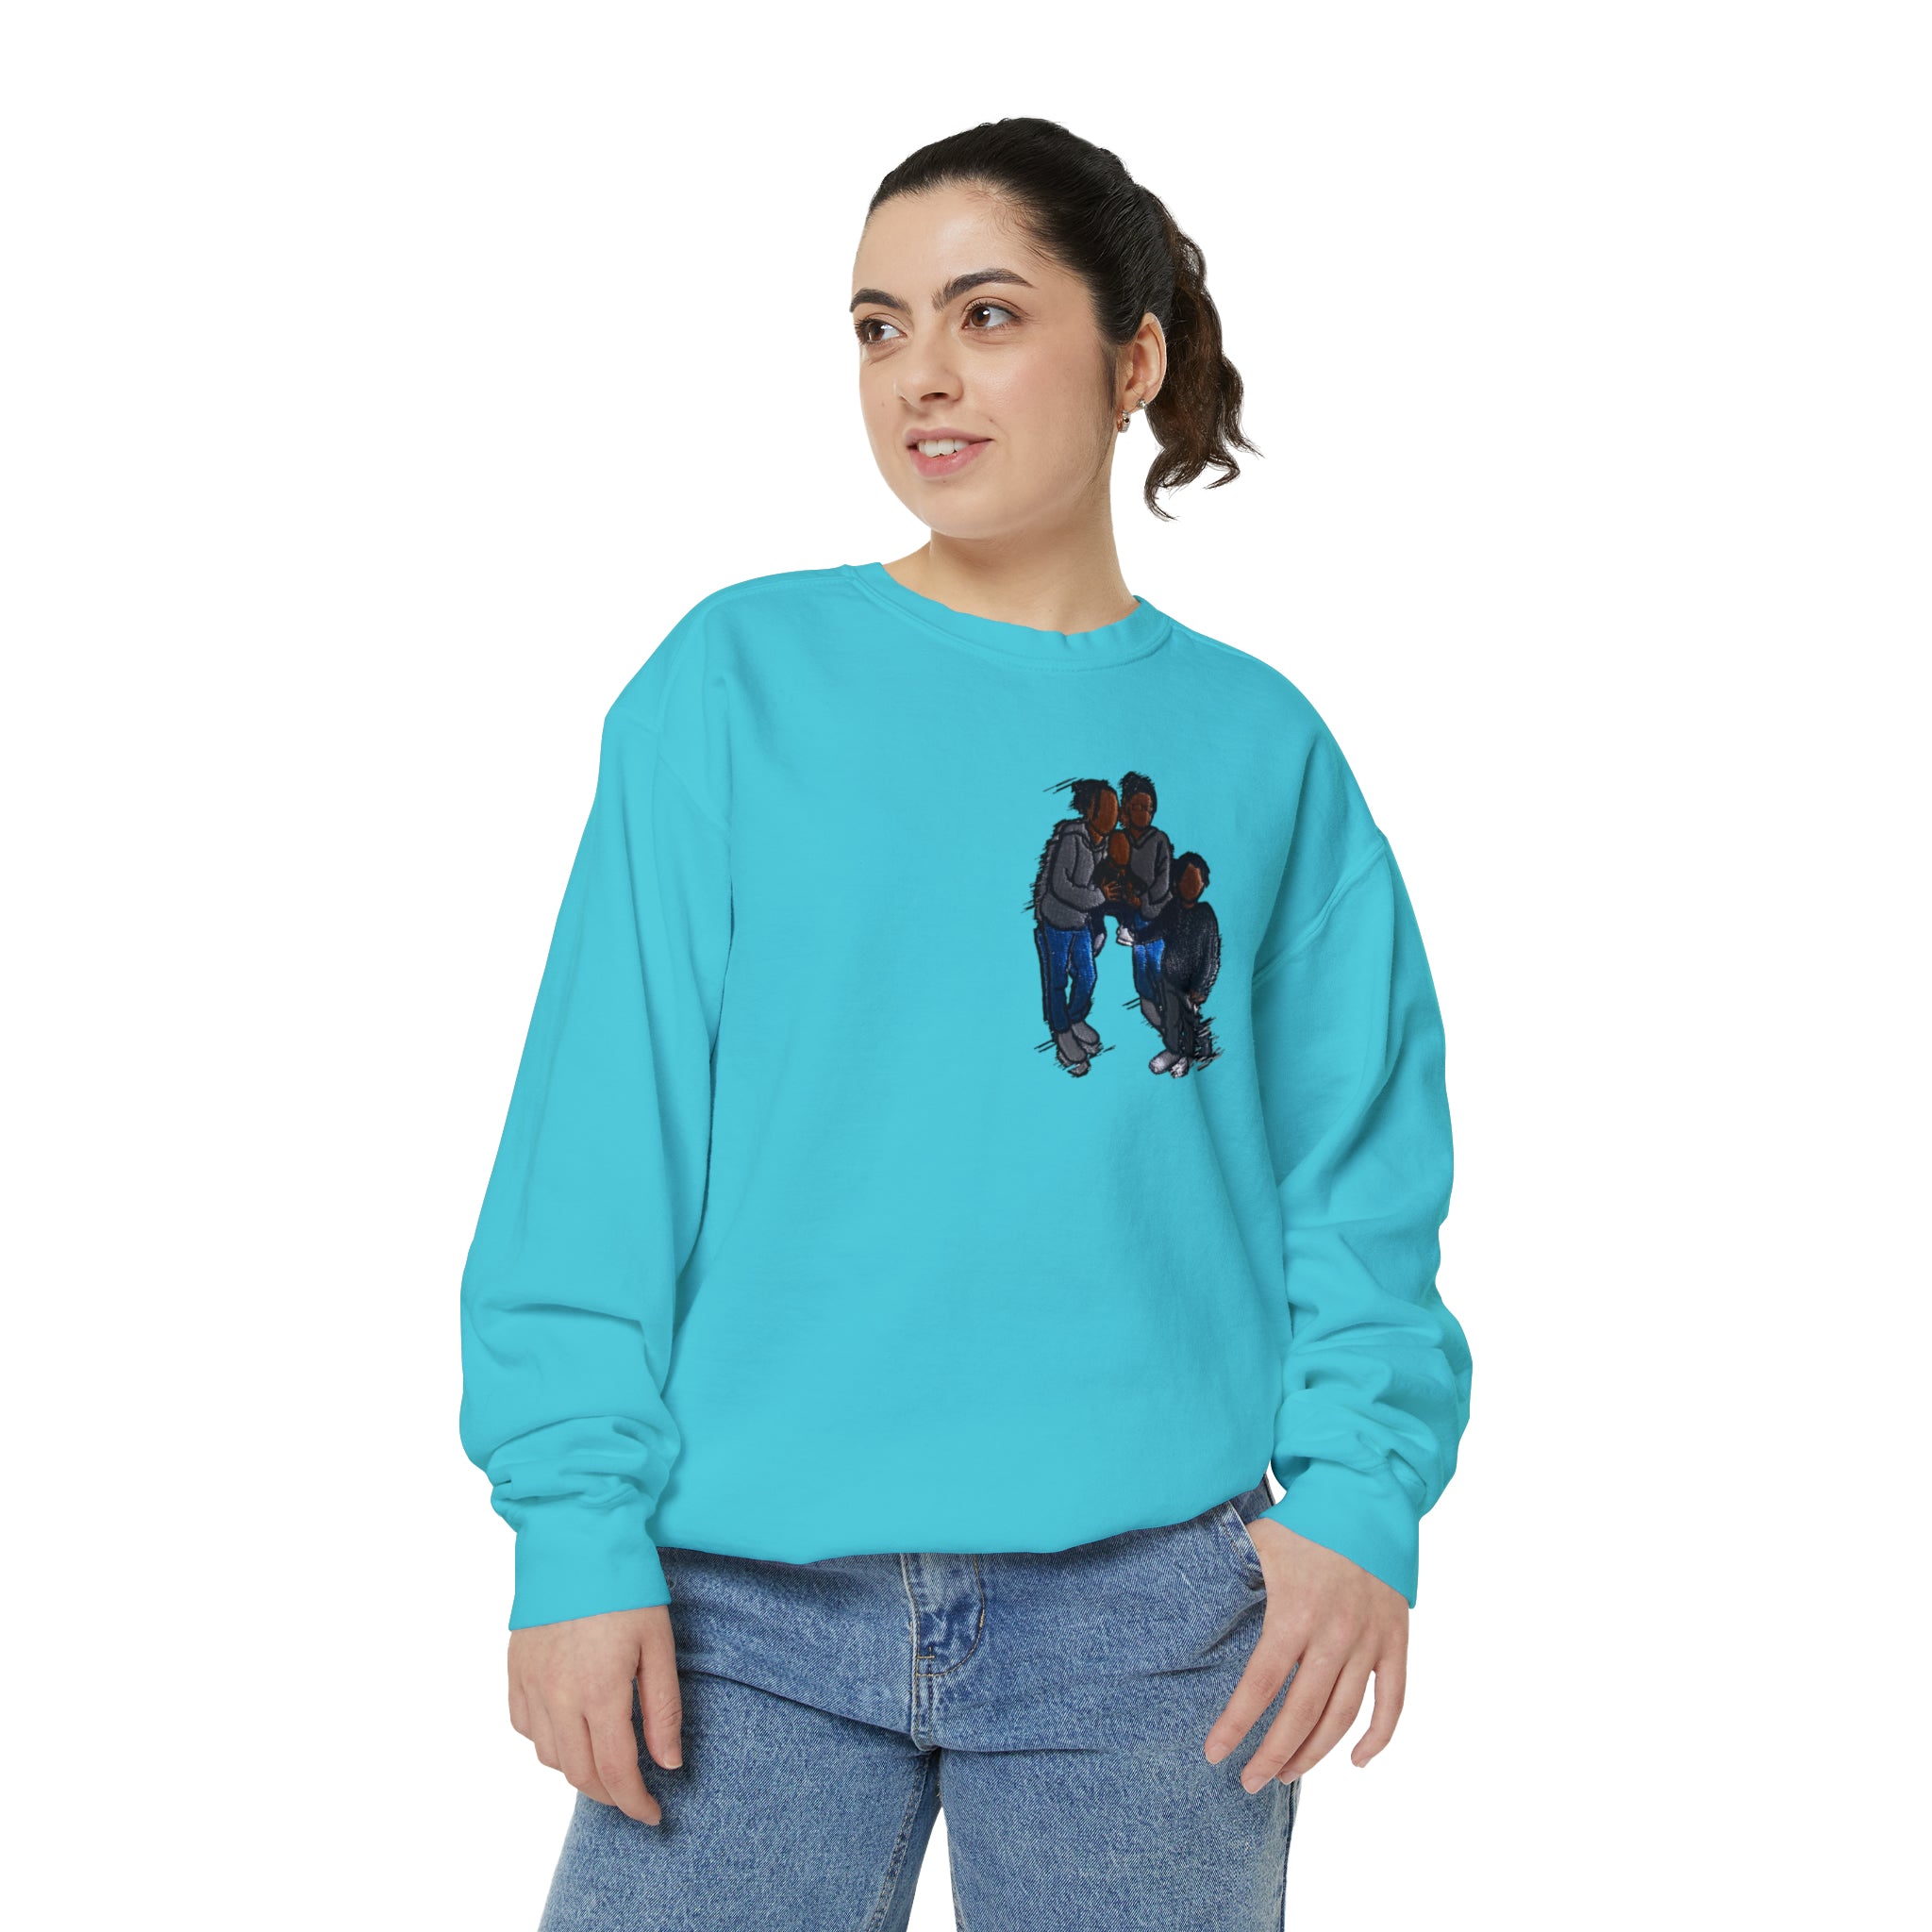 Siblings Garment-Dyed Sweatshirt